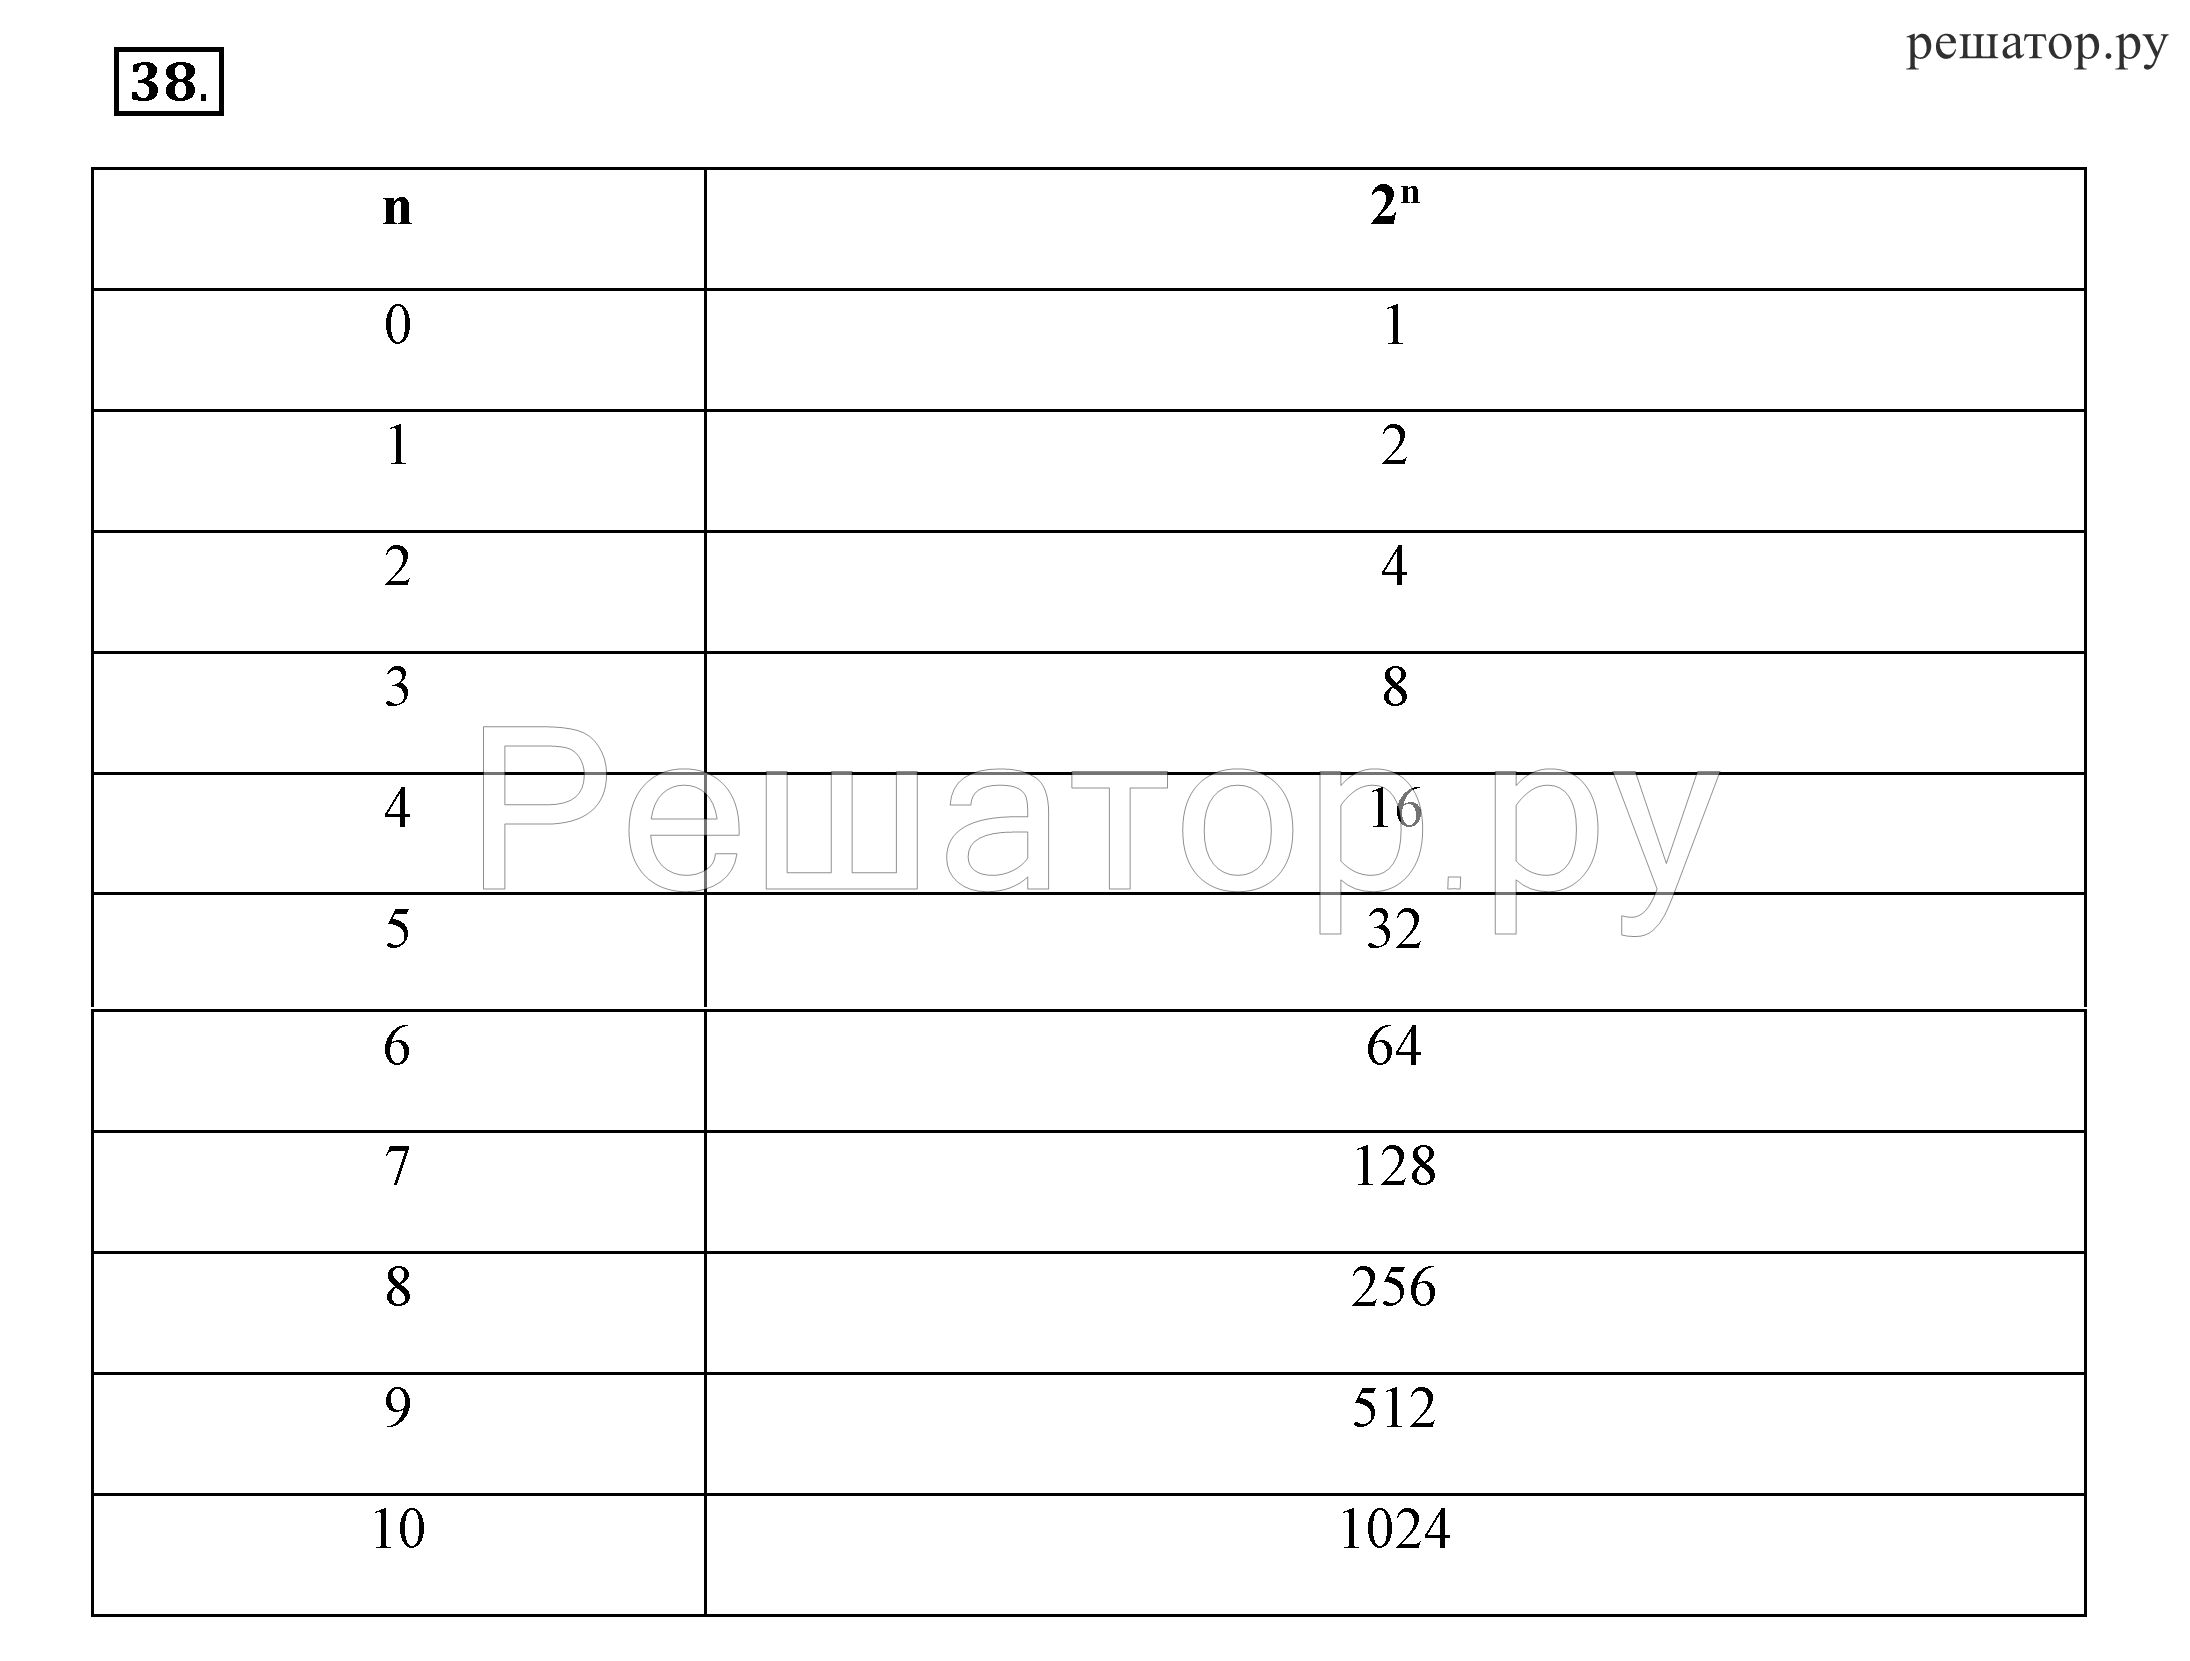 Тест по информатике 8 класс босова ответы. Рабочая тетрадь по информатике 8 класс босова. Информатика 8 класс босова оглавление. Контрольная по информатике 8 класс босова. Ответы на вопросы по информатике 8 класс босова пар 3.1.